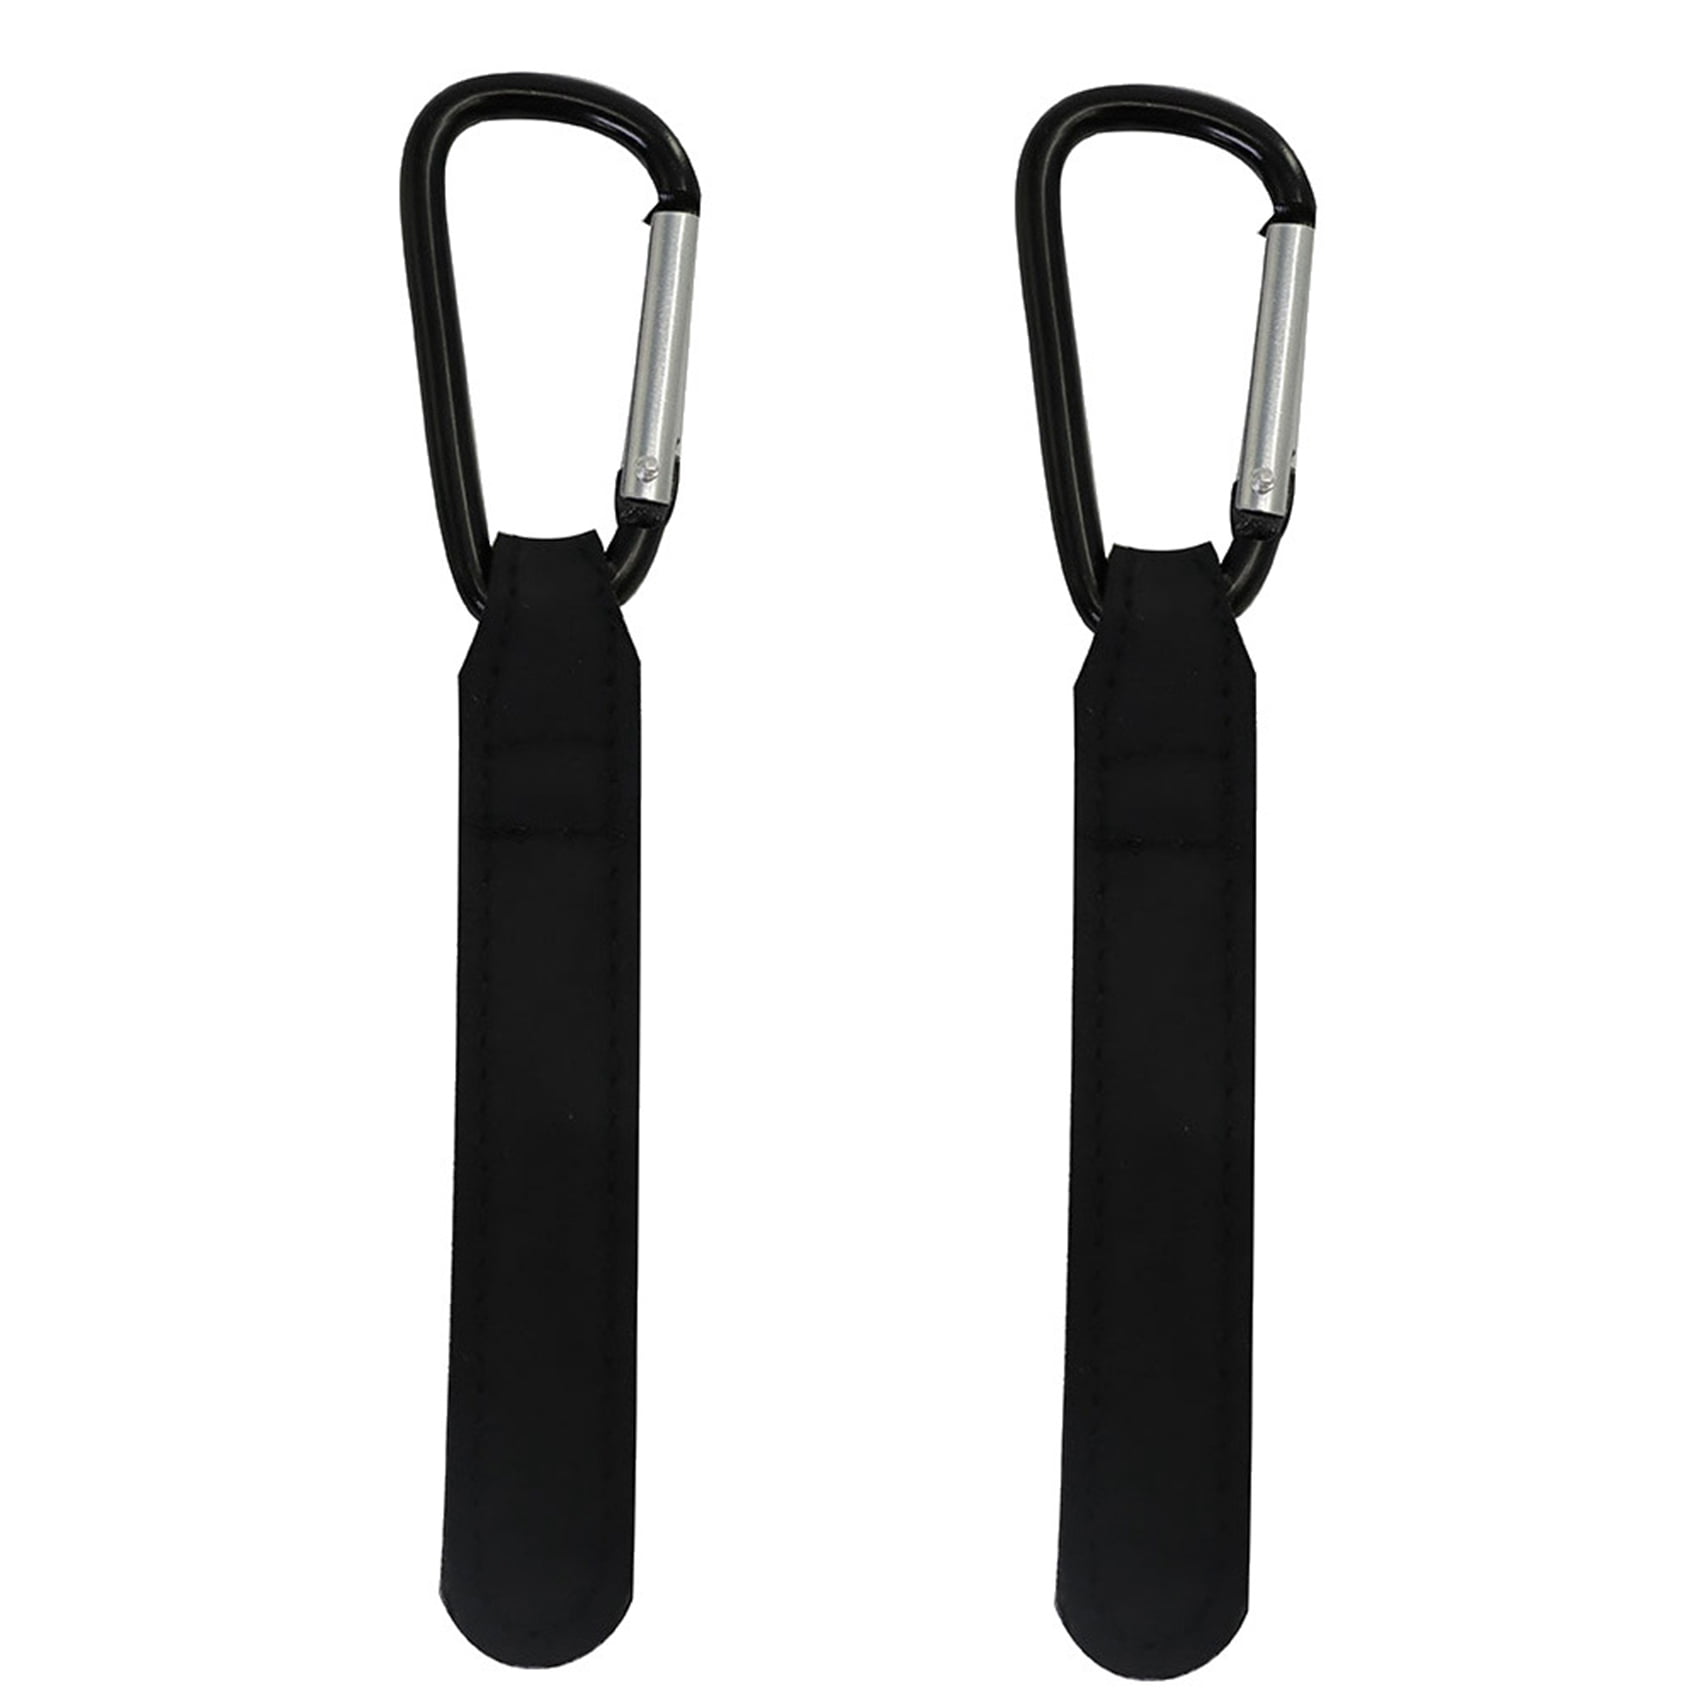 2pcs Stroller Hooks Baby Pram Hanger Bag Holder Nylon Accessories Clips Black 